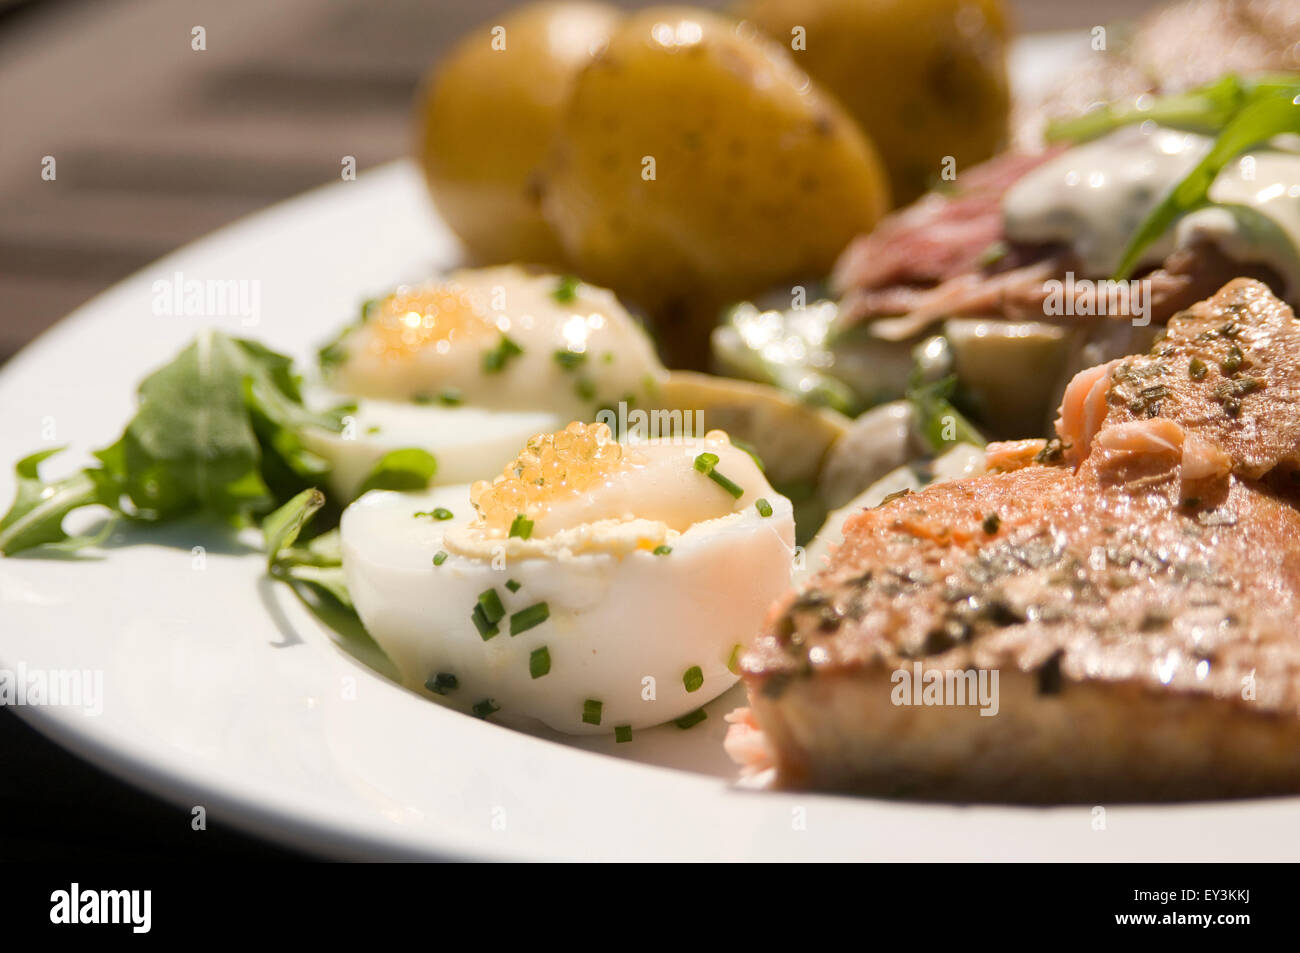 Skandinavische Diät schwedische Schweden Essen Mahlzeit Diäten Rauch Fischöl Lachs gekochtes Ei Eiern Kartoffeln frische gesunde Lebensmittel super Öle s Stockfoto